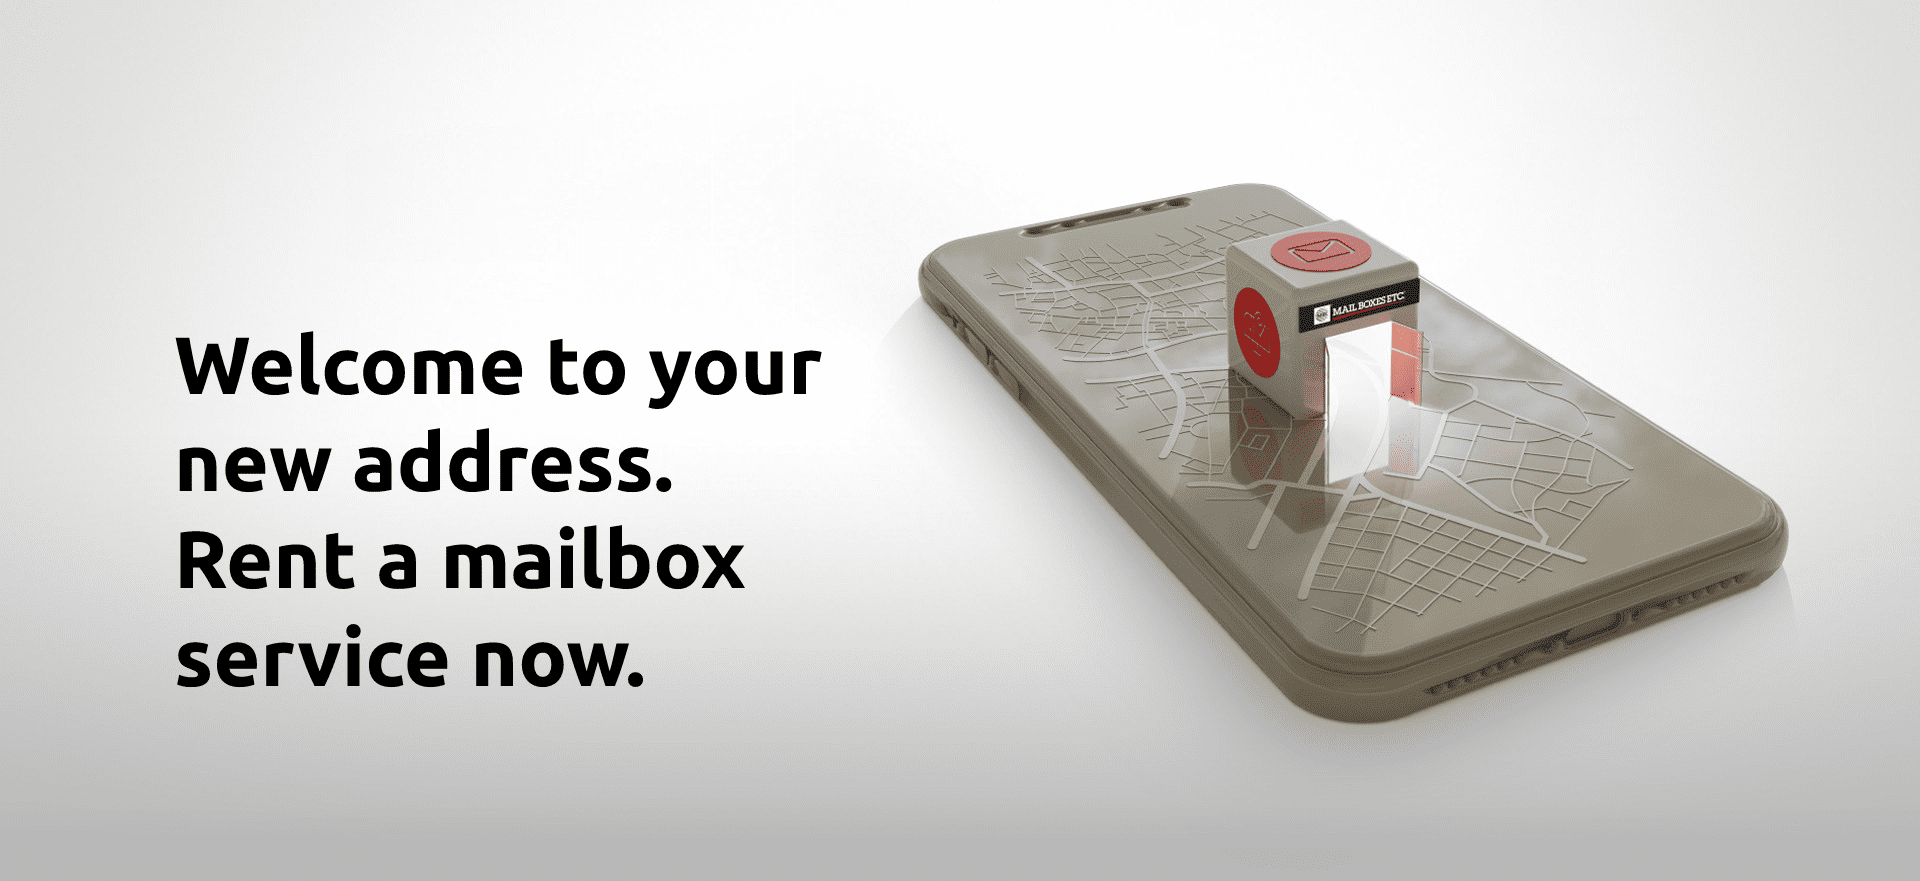 mail box rental portugal